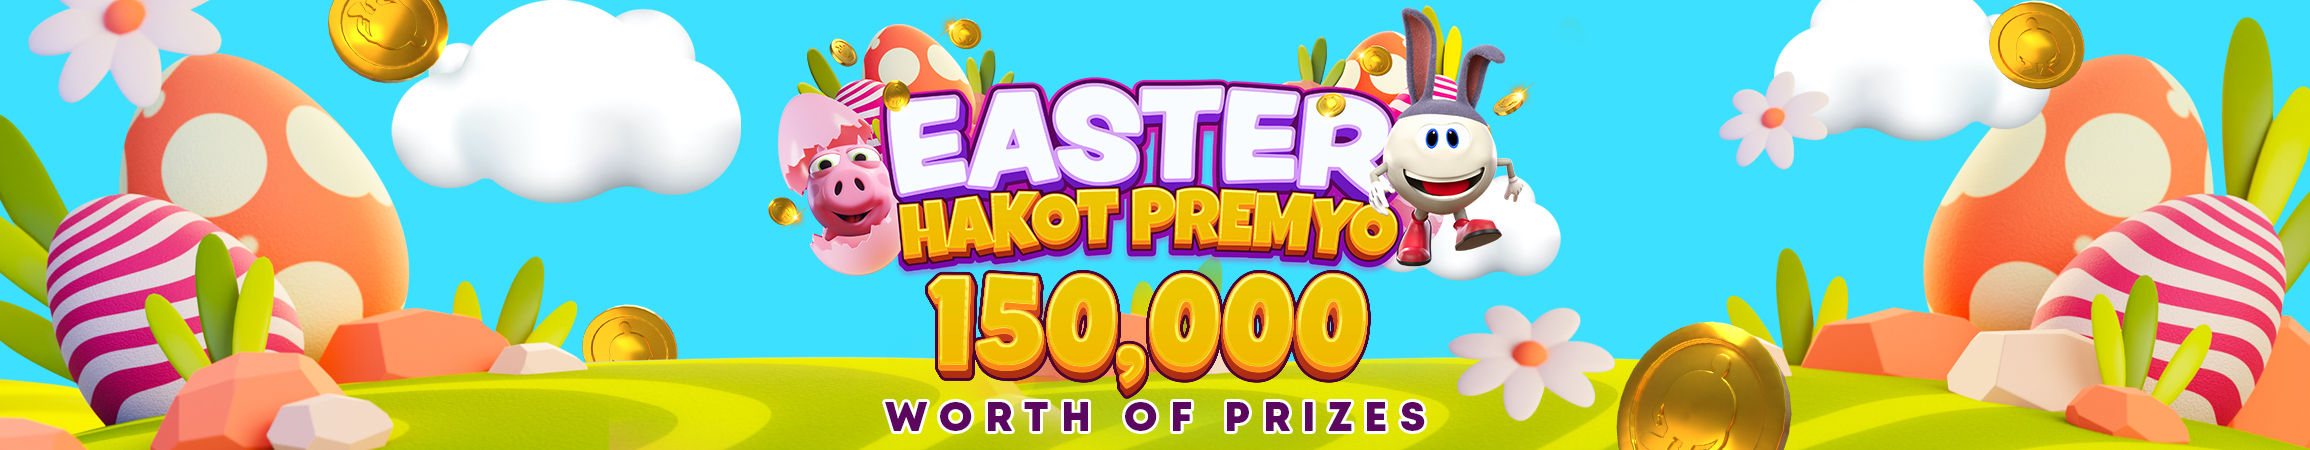 FBM® brings eggs full of prizes on a tasty Easter promo